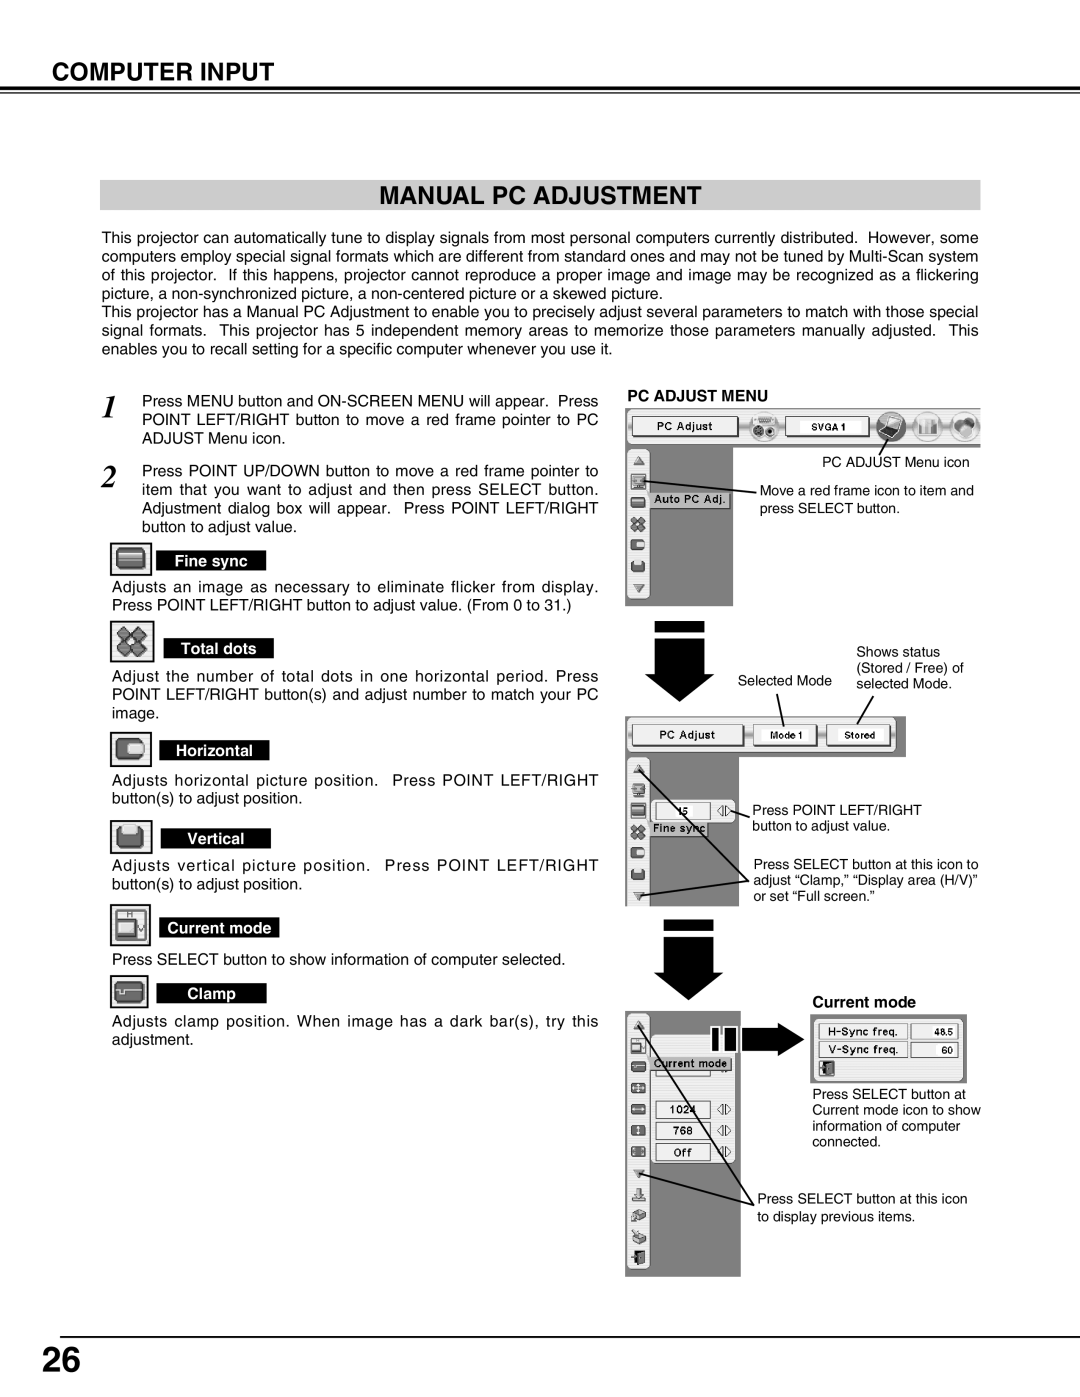 Eiki LC-X50 instruction manual Computer Input Manual Pc Adjustment, Pc Adjust Menu, Current mode 